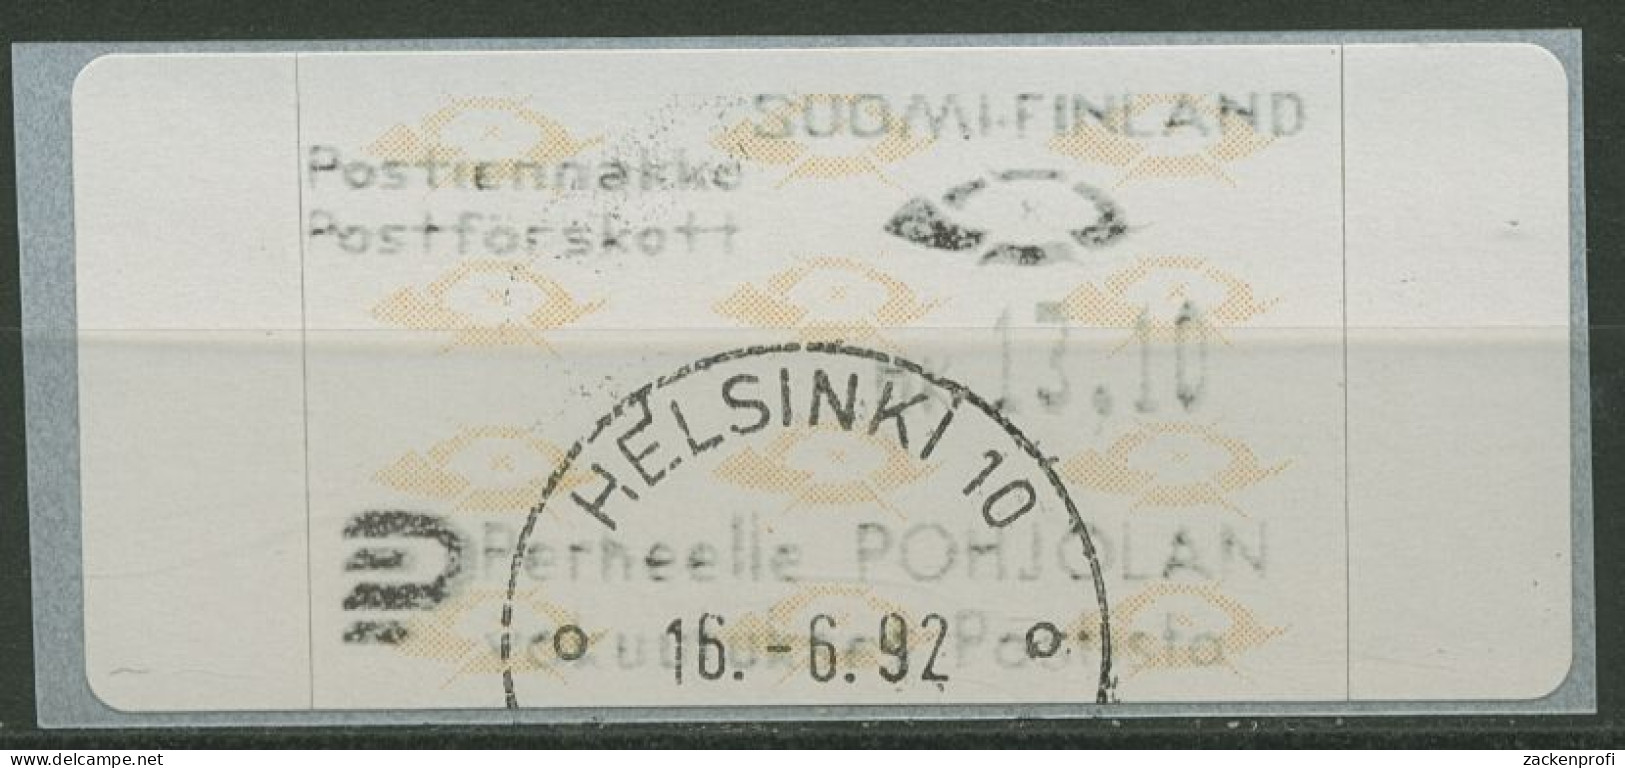 Finnland Automatenmarken 1992 Posthörner Einzelwert ATM 12.3 Z5 Gestempelt - Timbres De Distributeurs [ATM]